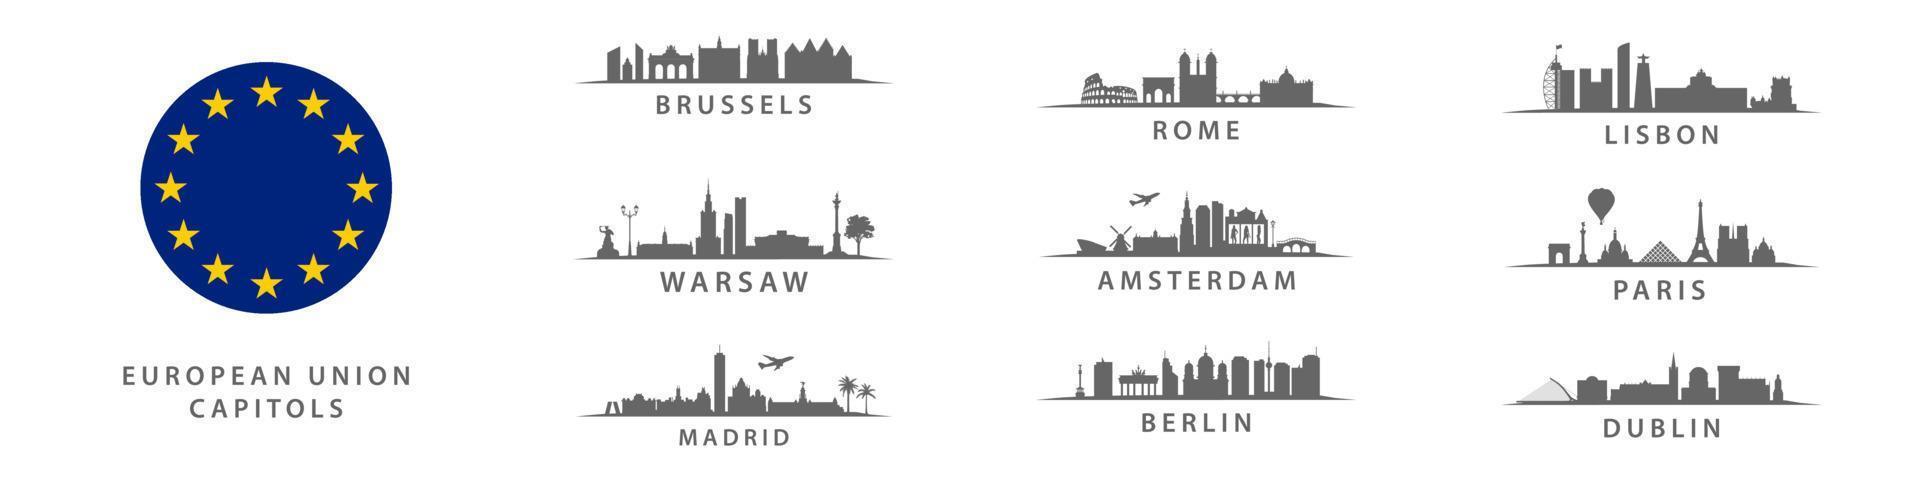 sammlung von hauptstädten der europäischen union, große stadt auf dem alten kontinent, wichtiges metropolenpanorama vektor